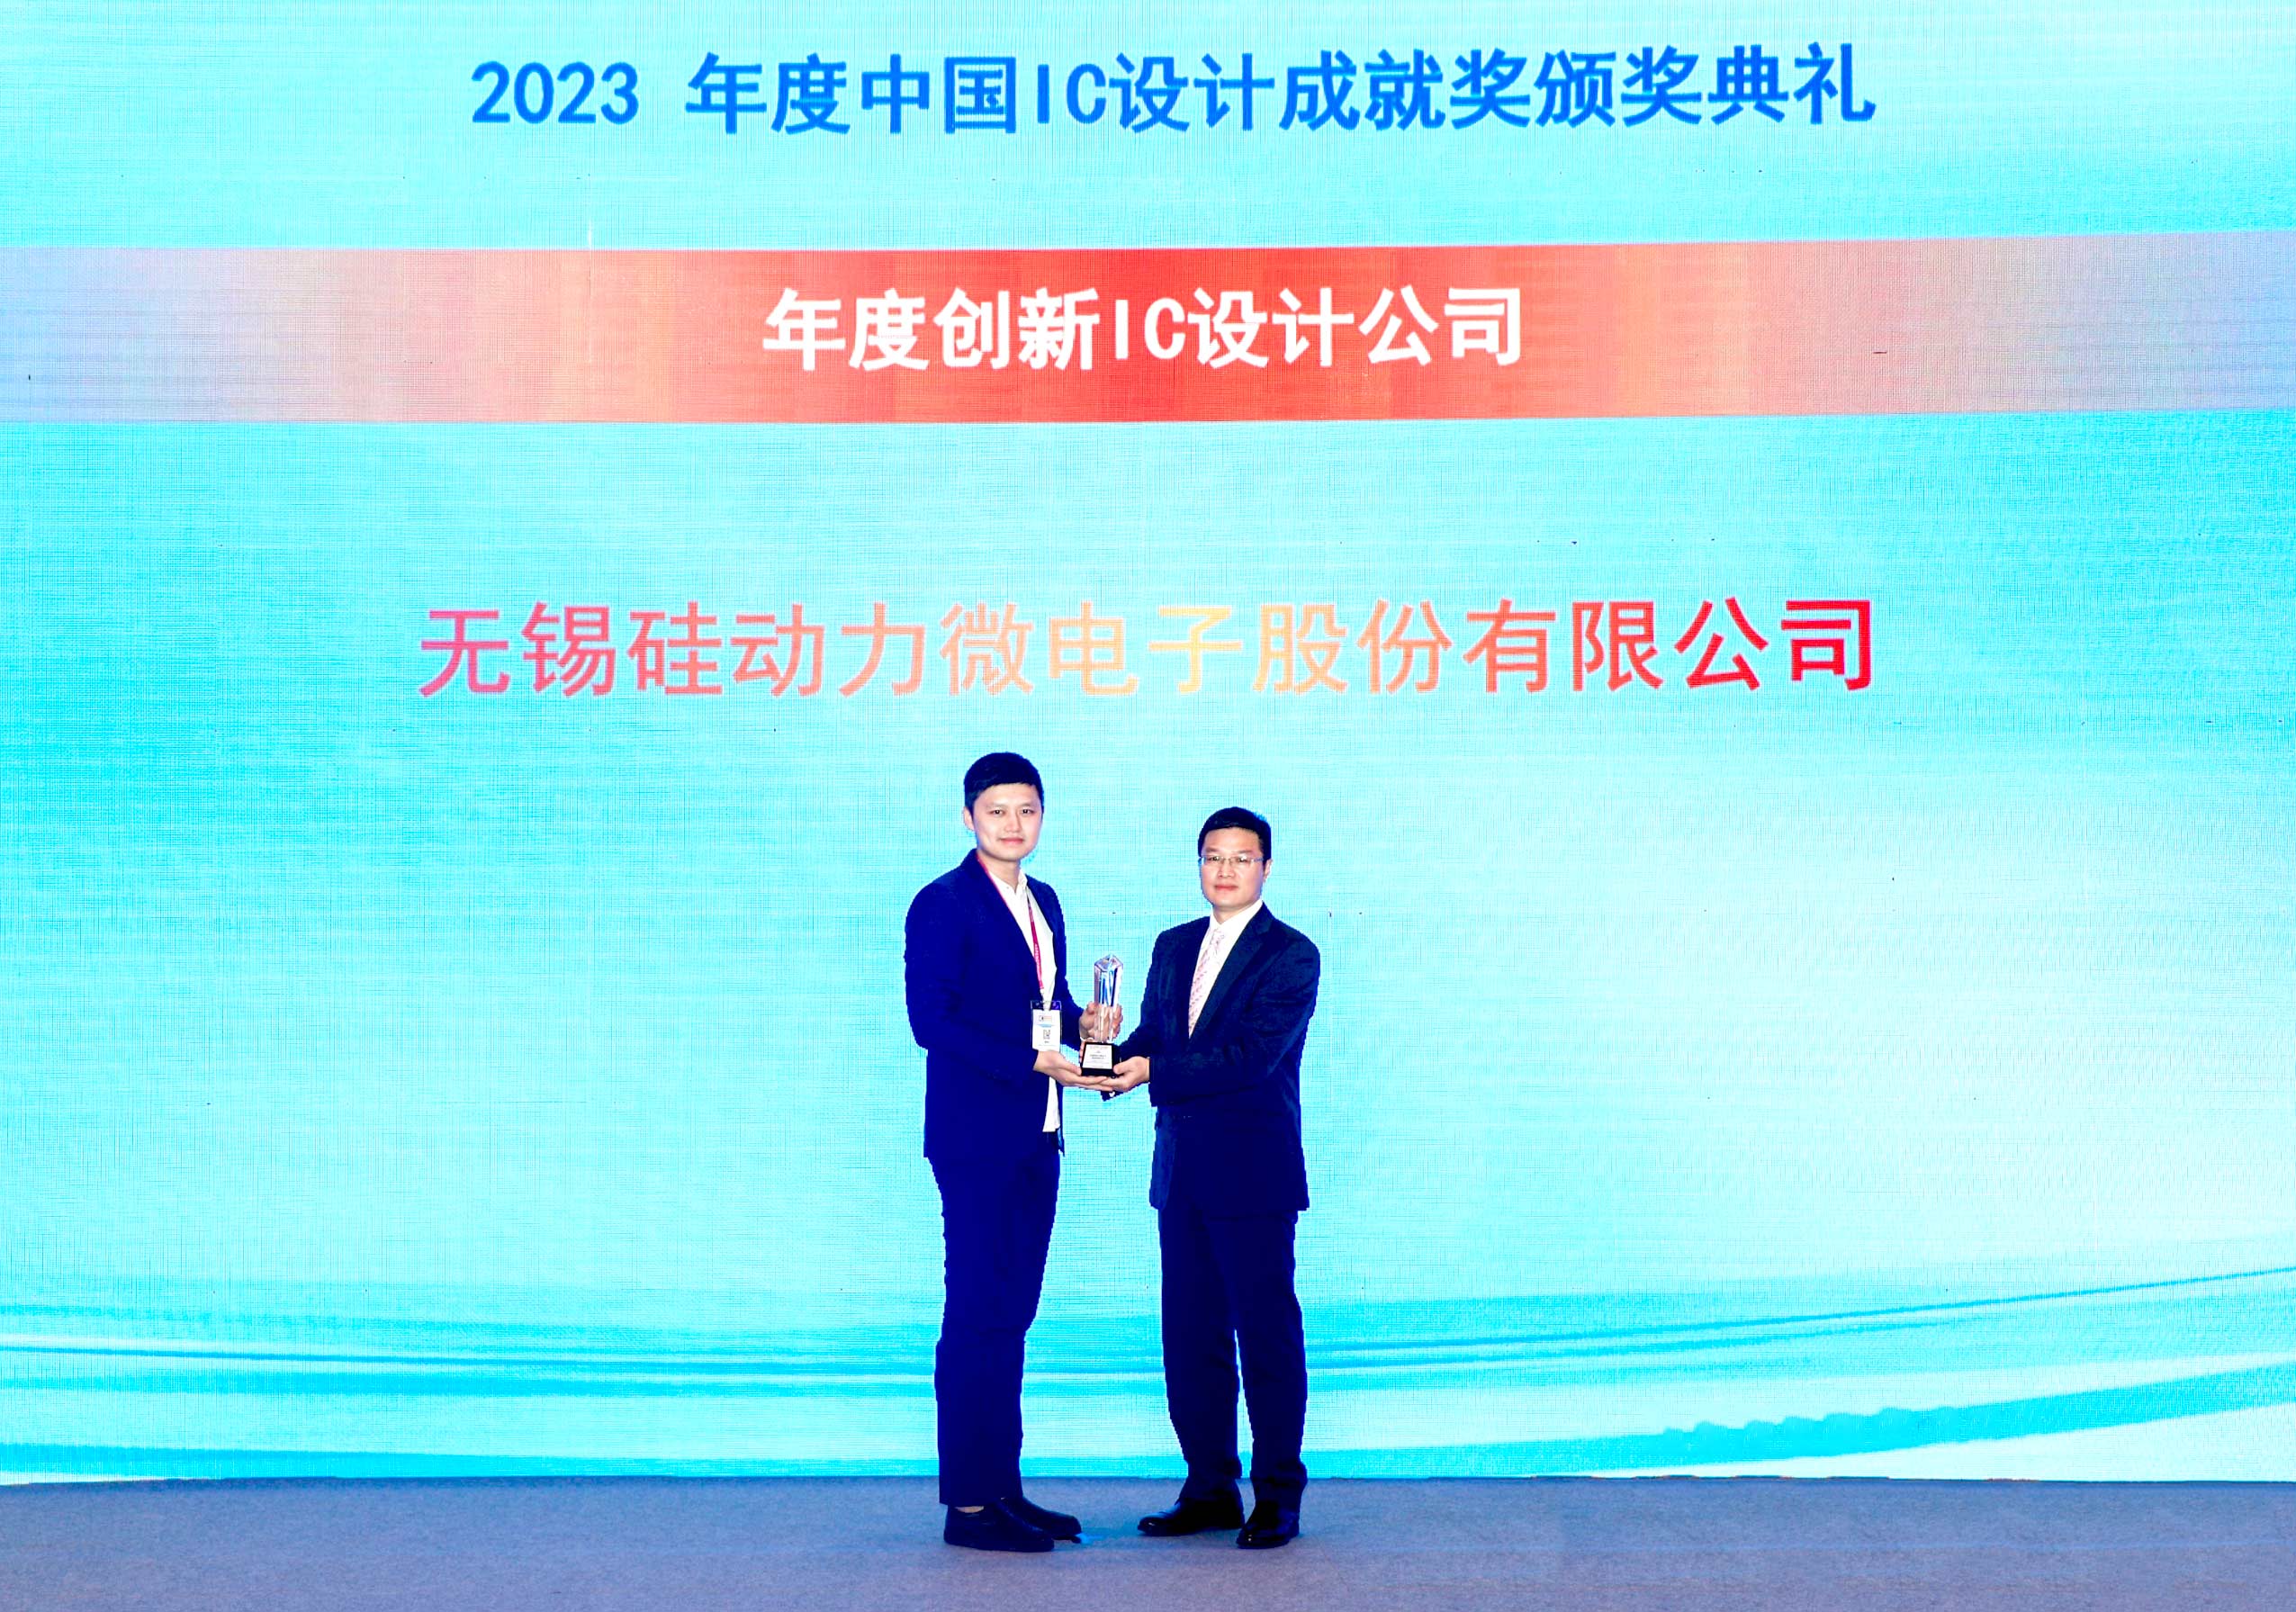 再获殊荣 | 硅动力荣获2023中国IC设计成就奖之年度创新IC设计公司